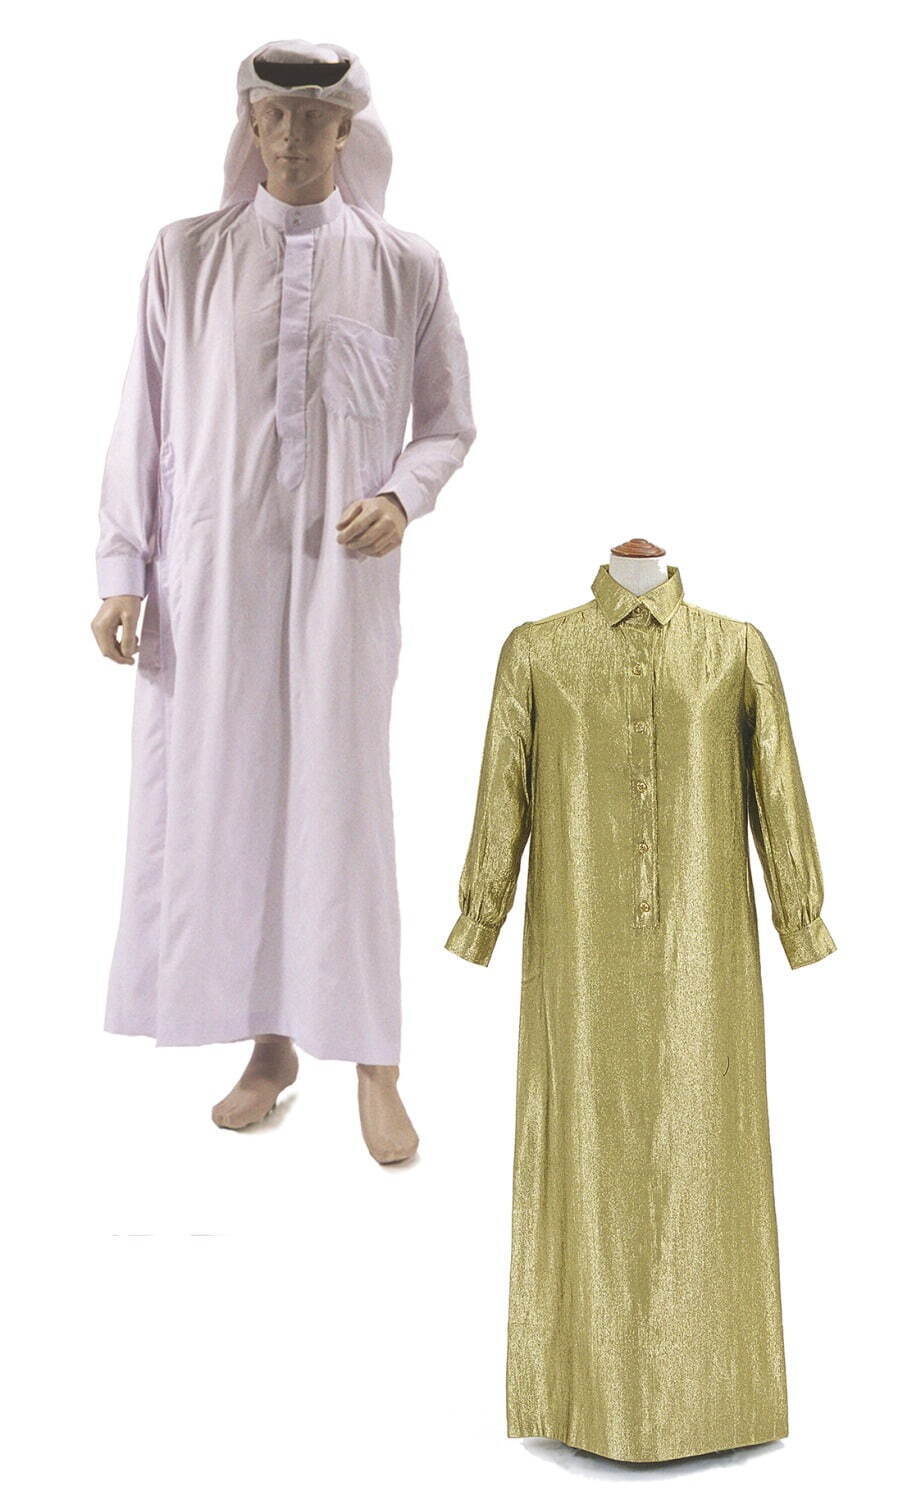 男性衣装 アラブ地域(上) ドレス 1977年 サンローラン(右)